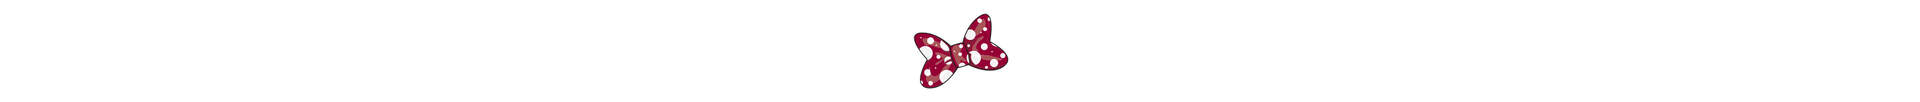 Bannière de la collection Cybex Petticoat nœud papillon par Jeremy Scott